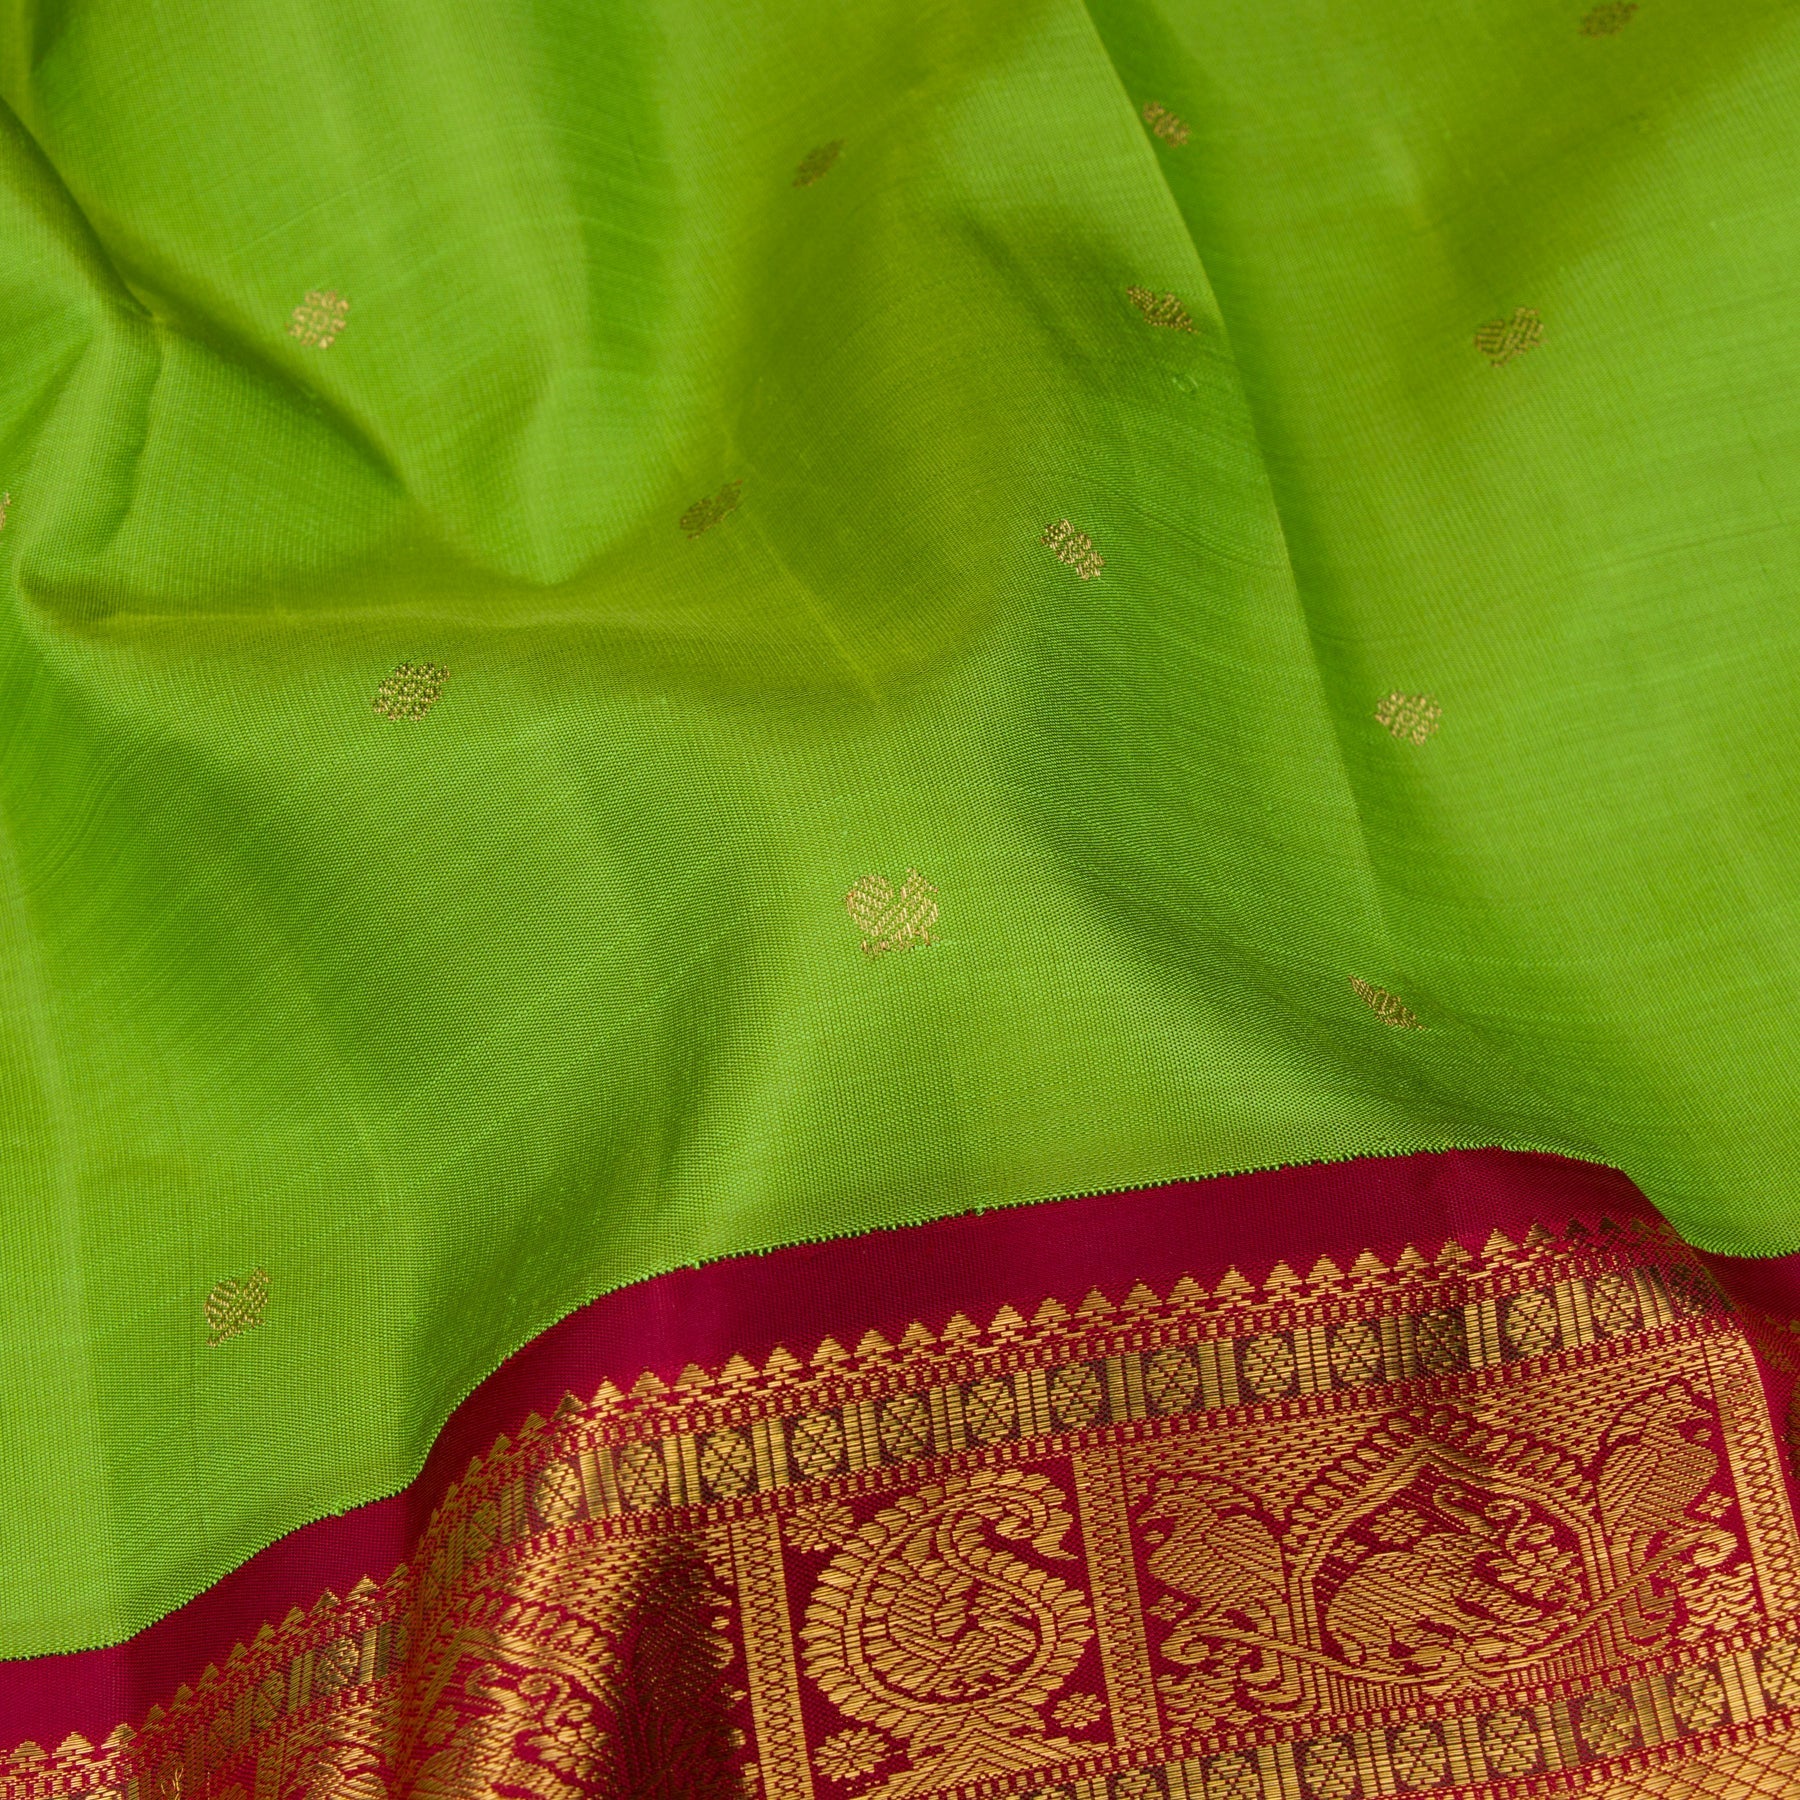 Kanakavalli Kanjivaram Silk Sari 23-110-HS001-09952 - Fabric View